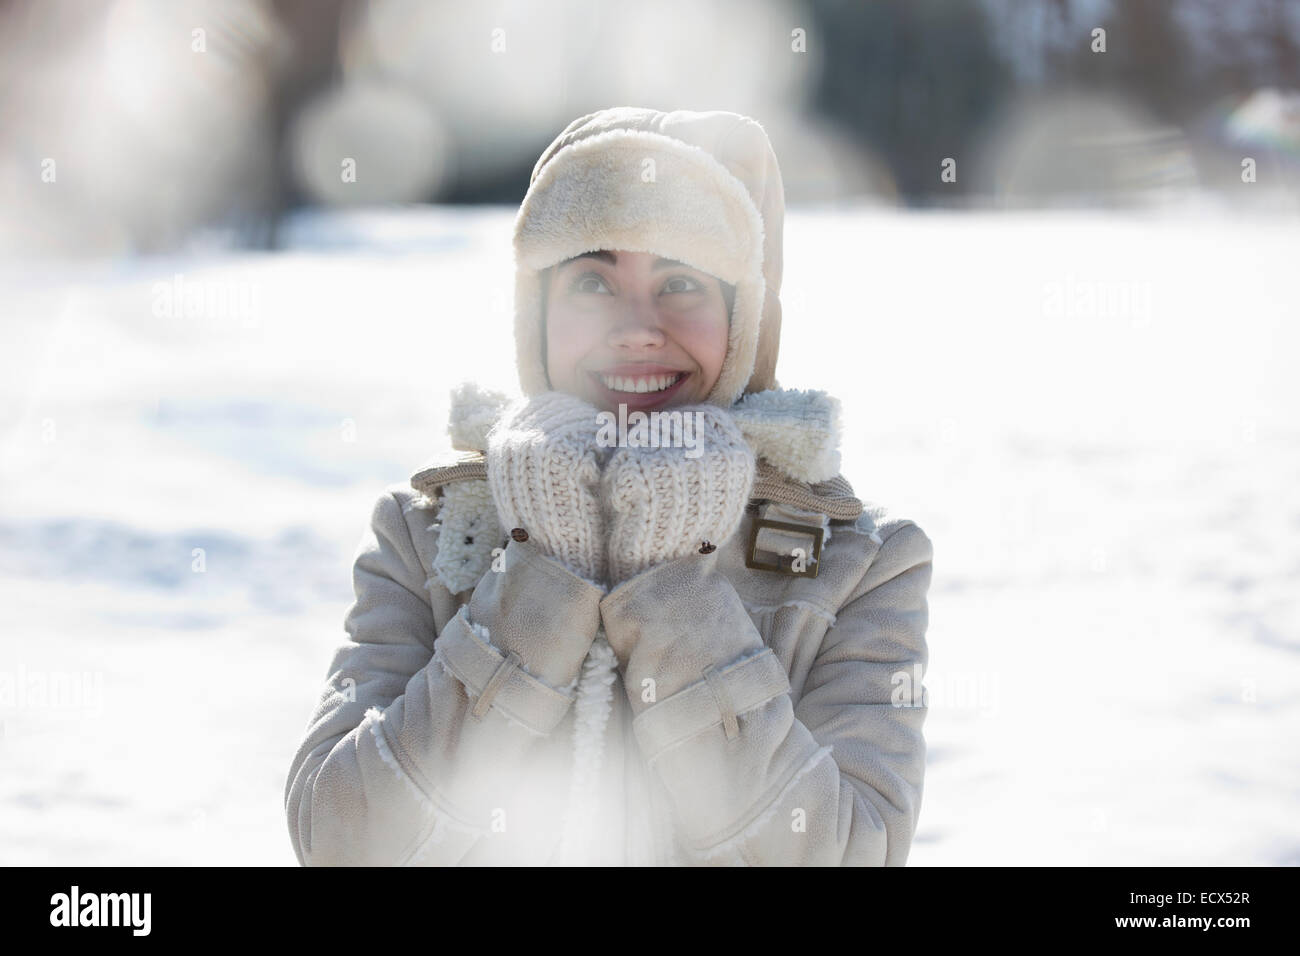 Femme en vêtements chauds smiling in snow Banque D'Images